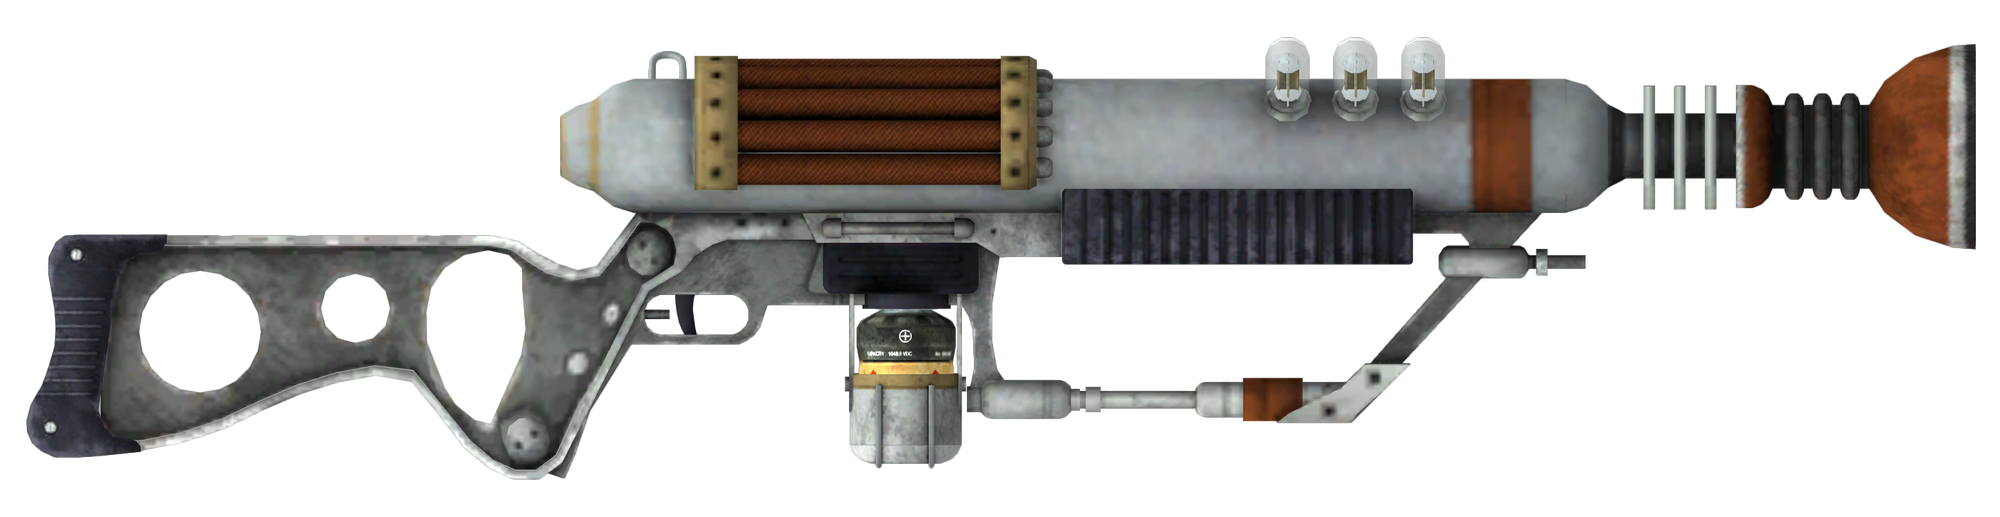 лазерный пистолет из fallout 4 фото 33